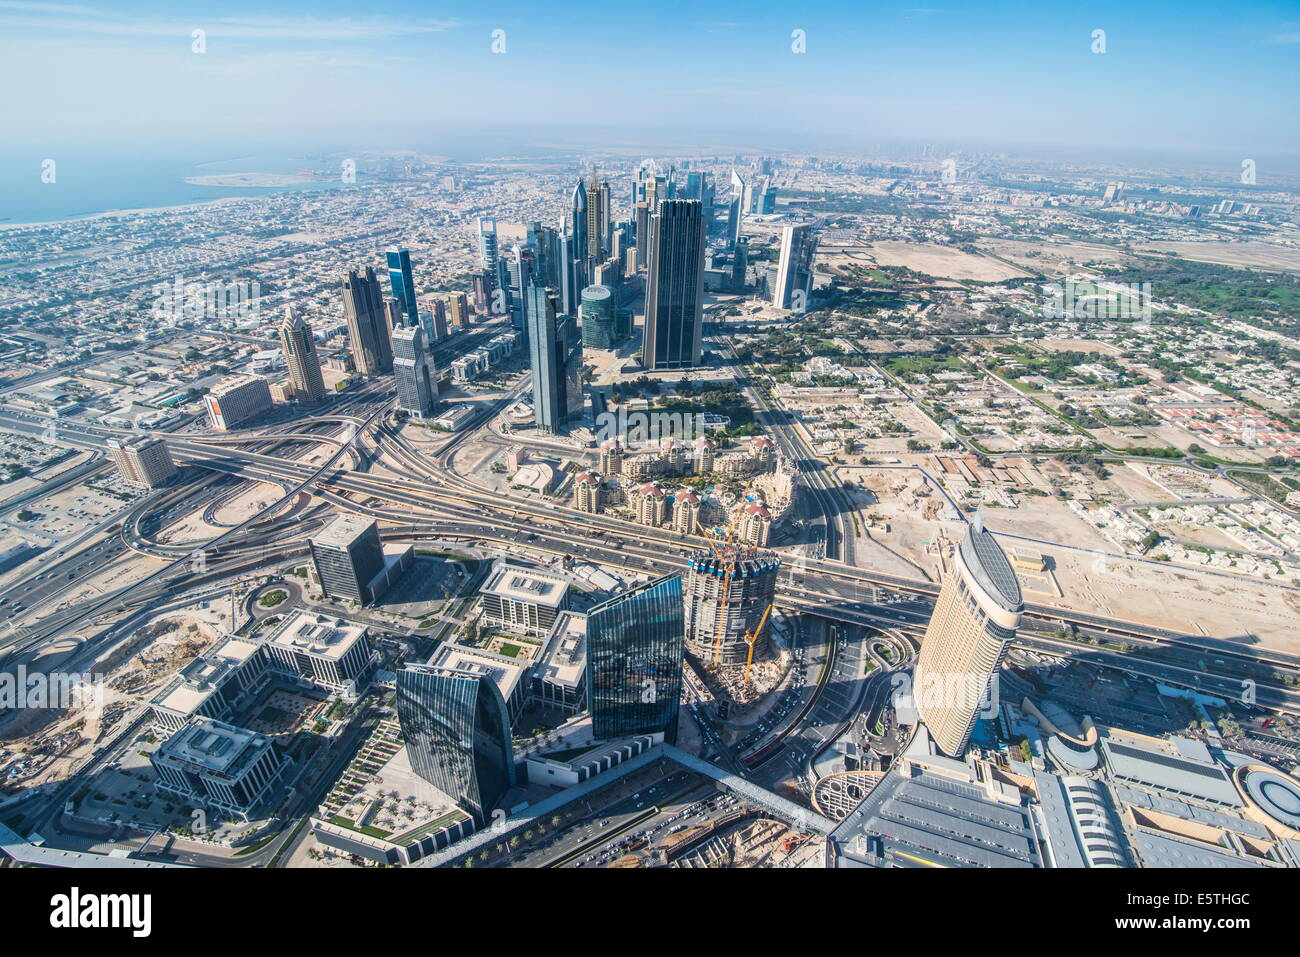 View over Dubai from Burj Khalifa, Dubai, United Arab Emirates, Middle East Stock Photo